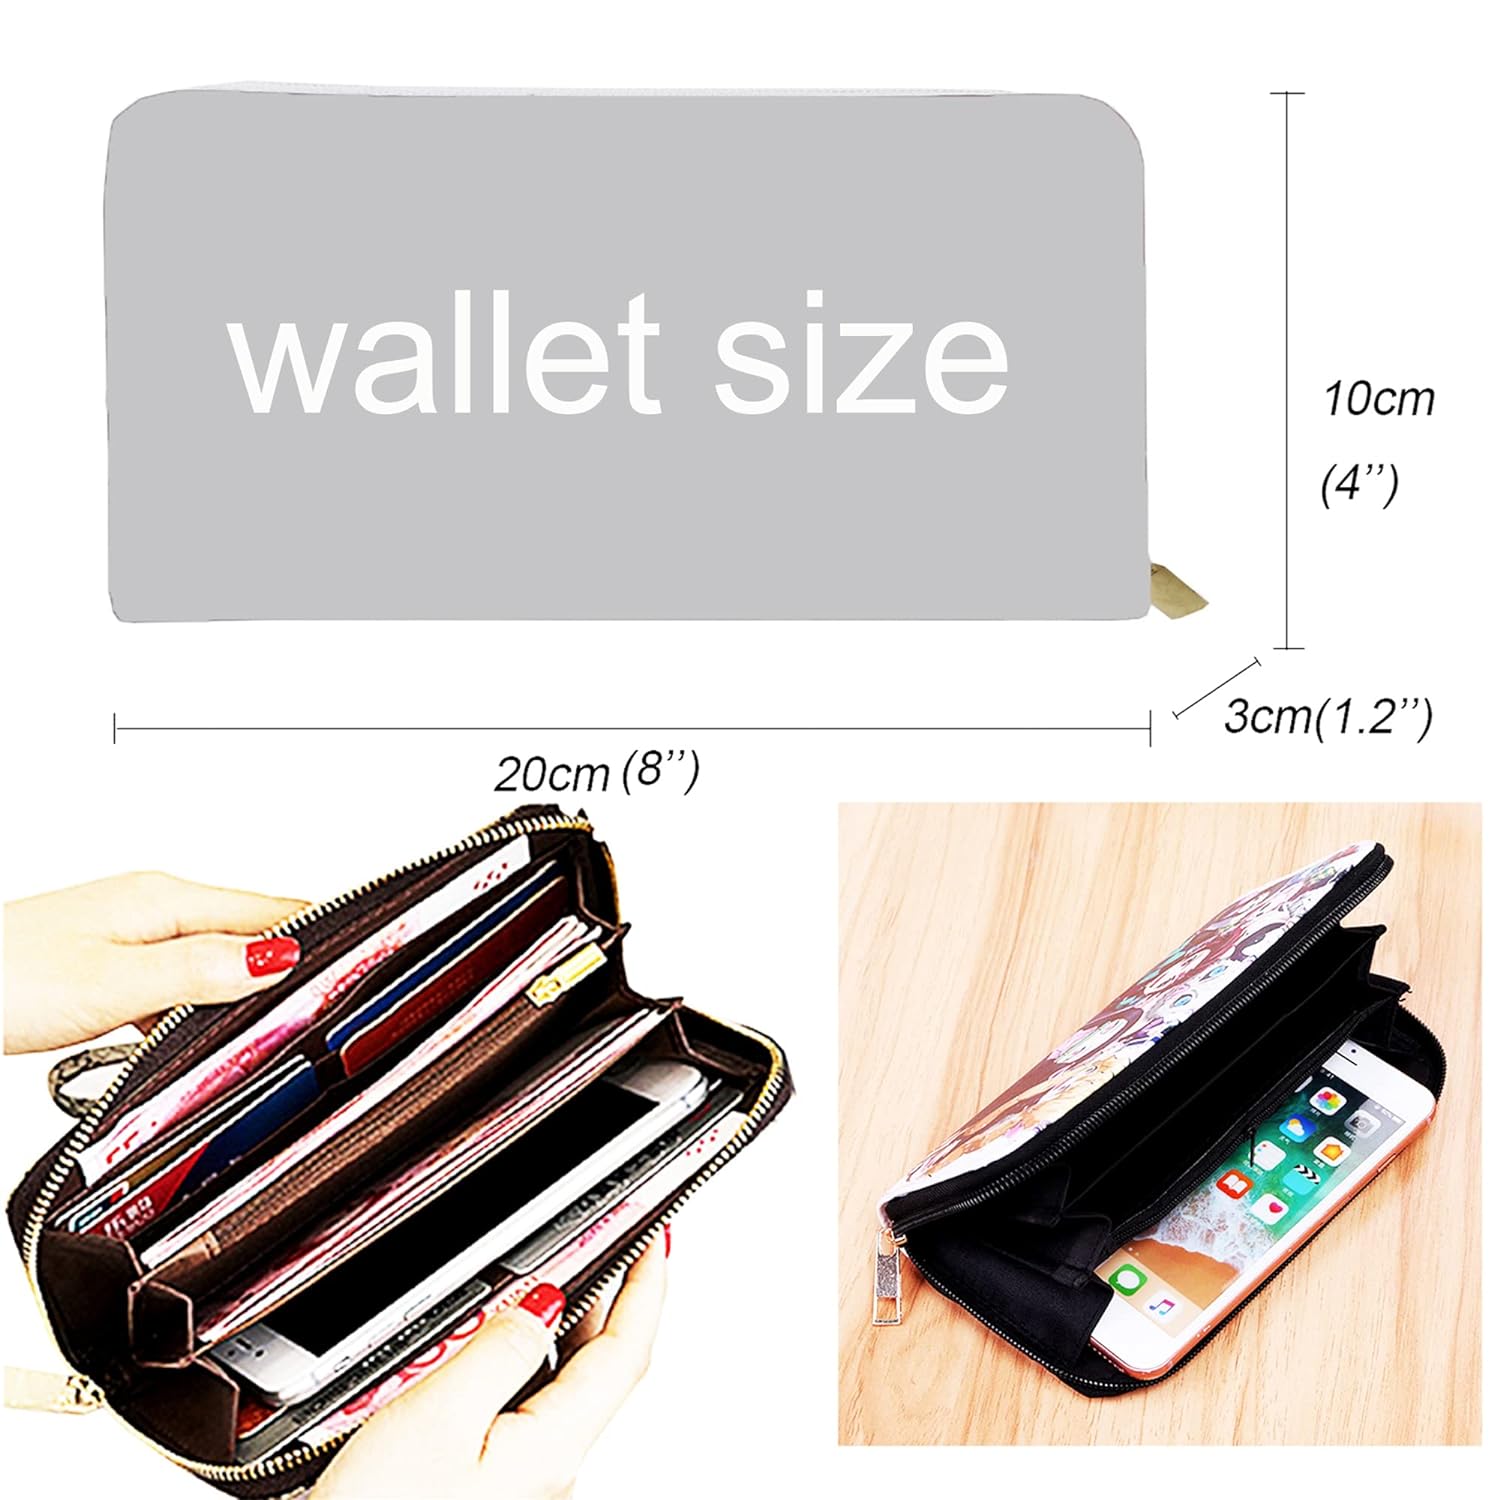 ACUOTN Anime Wallet Cute Leather Wallet Long Horror Wallet Men Women Wallet (Nightm-Bianfujack)